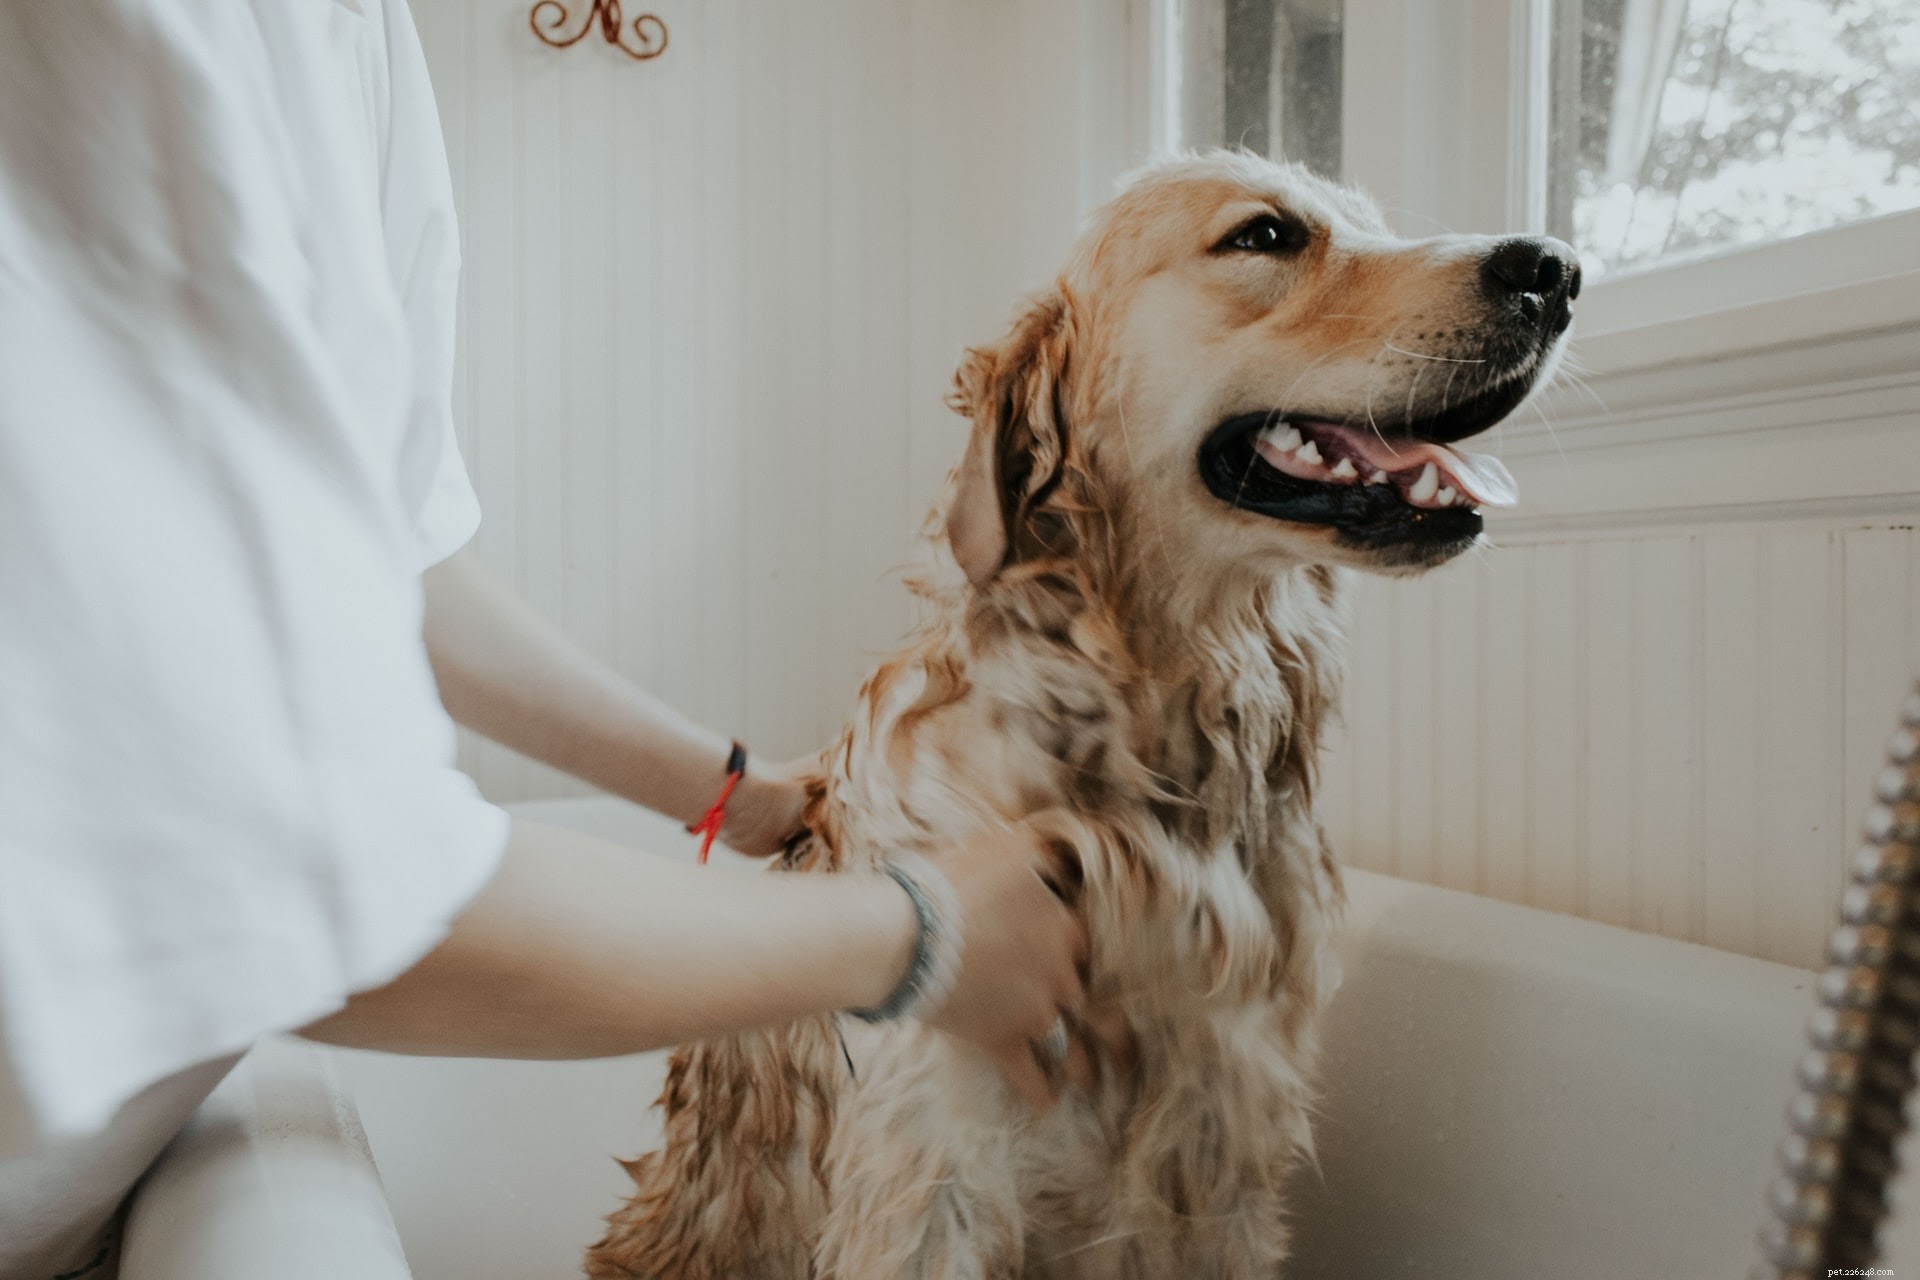 Come fare il bagno a un cane (parte 1):preparare il cane per il bagno